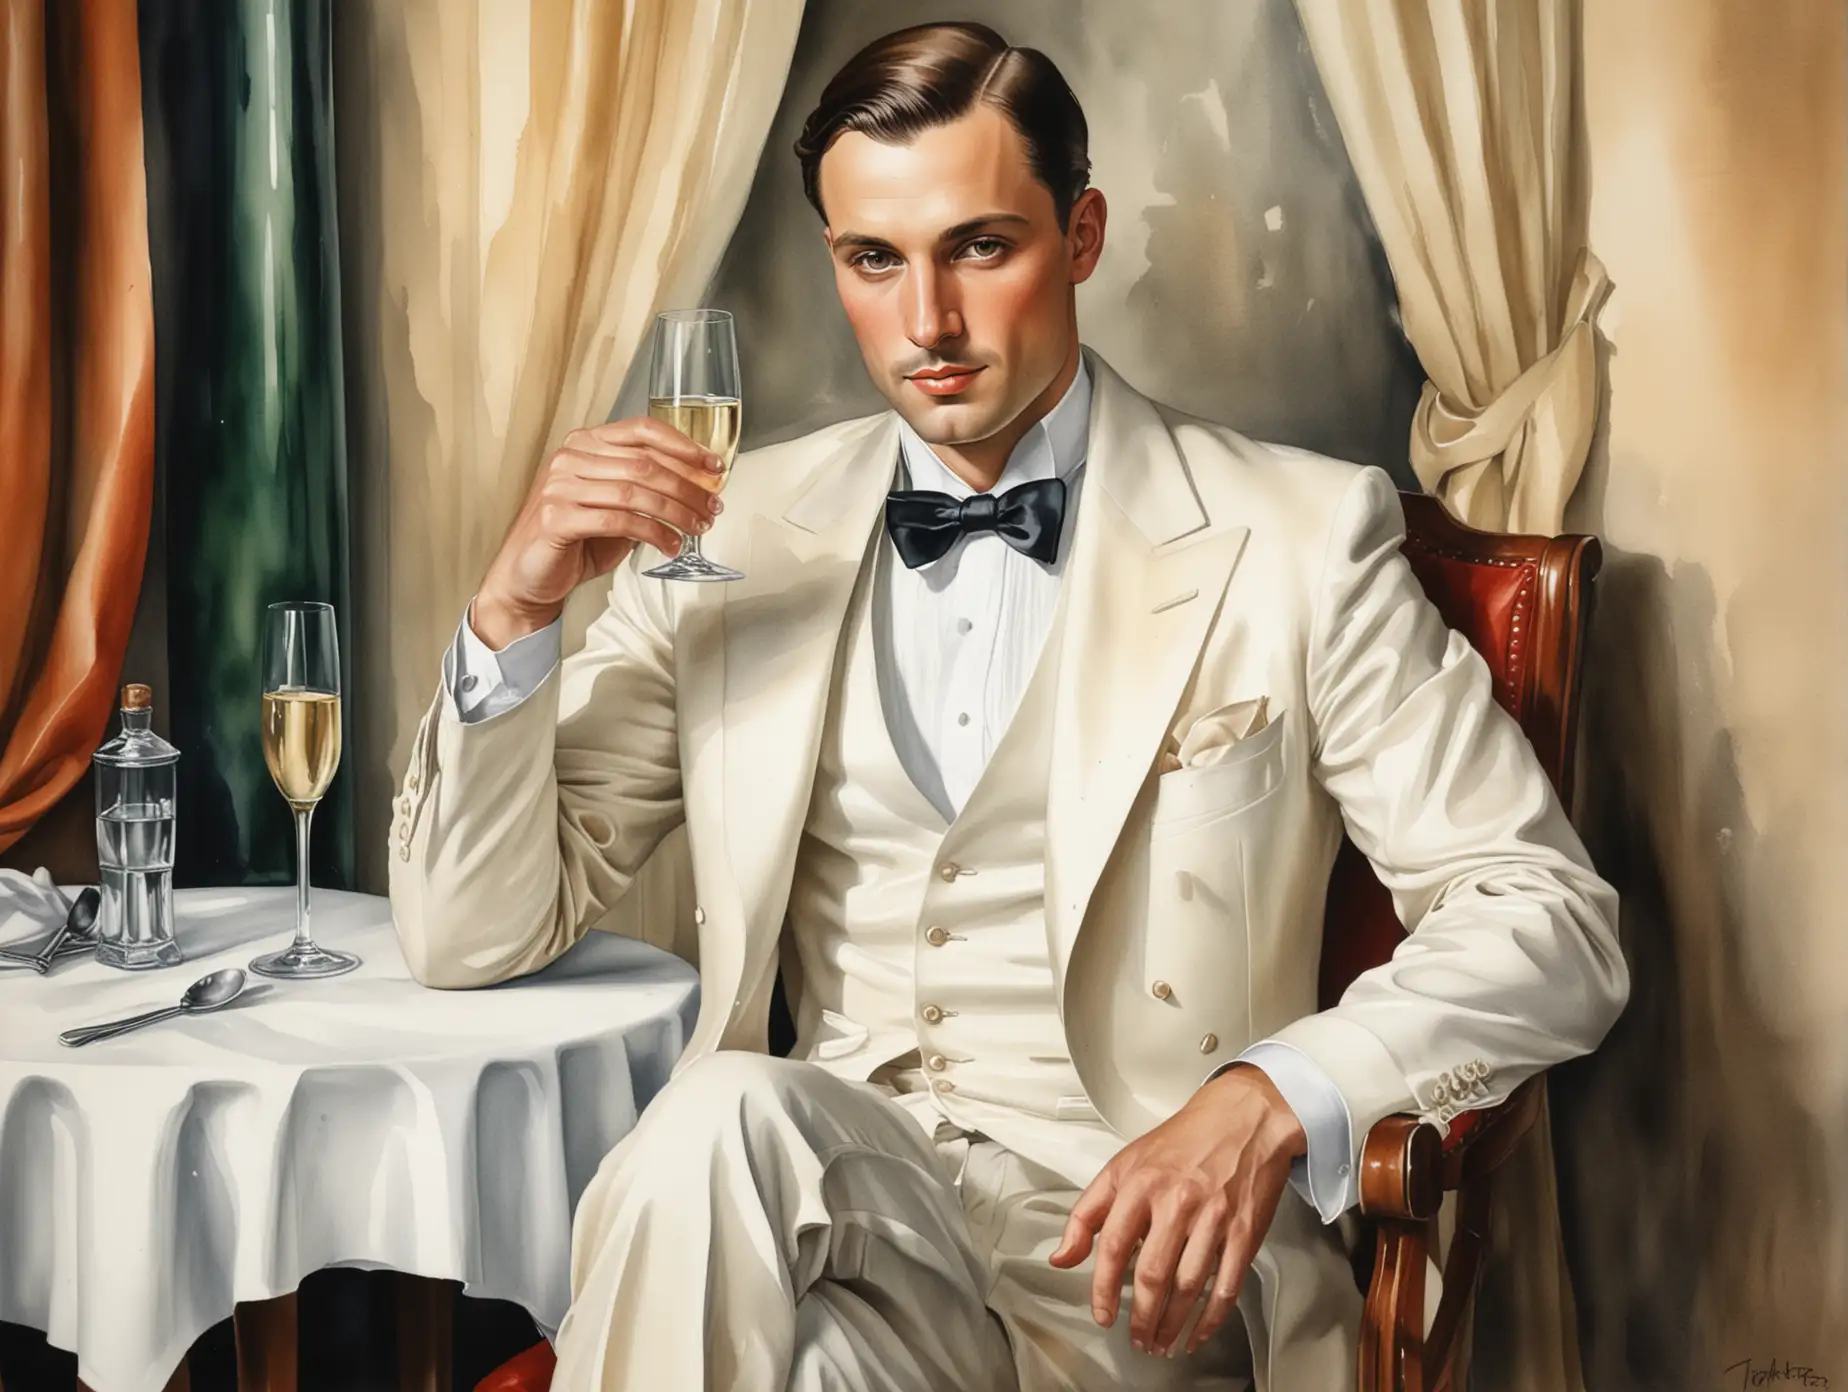 1920s Art Deco Man in White Dinner Jacket Enjoying Champagne